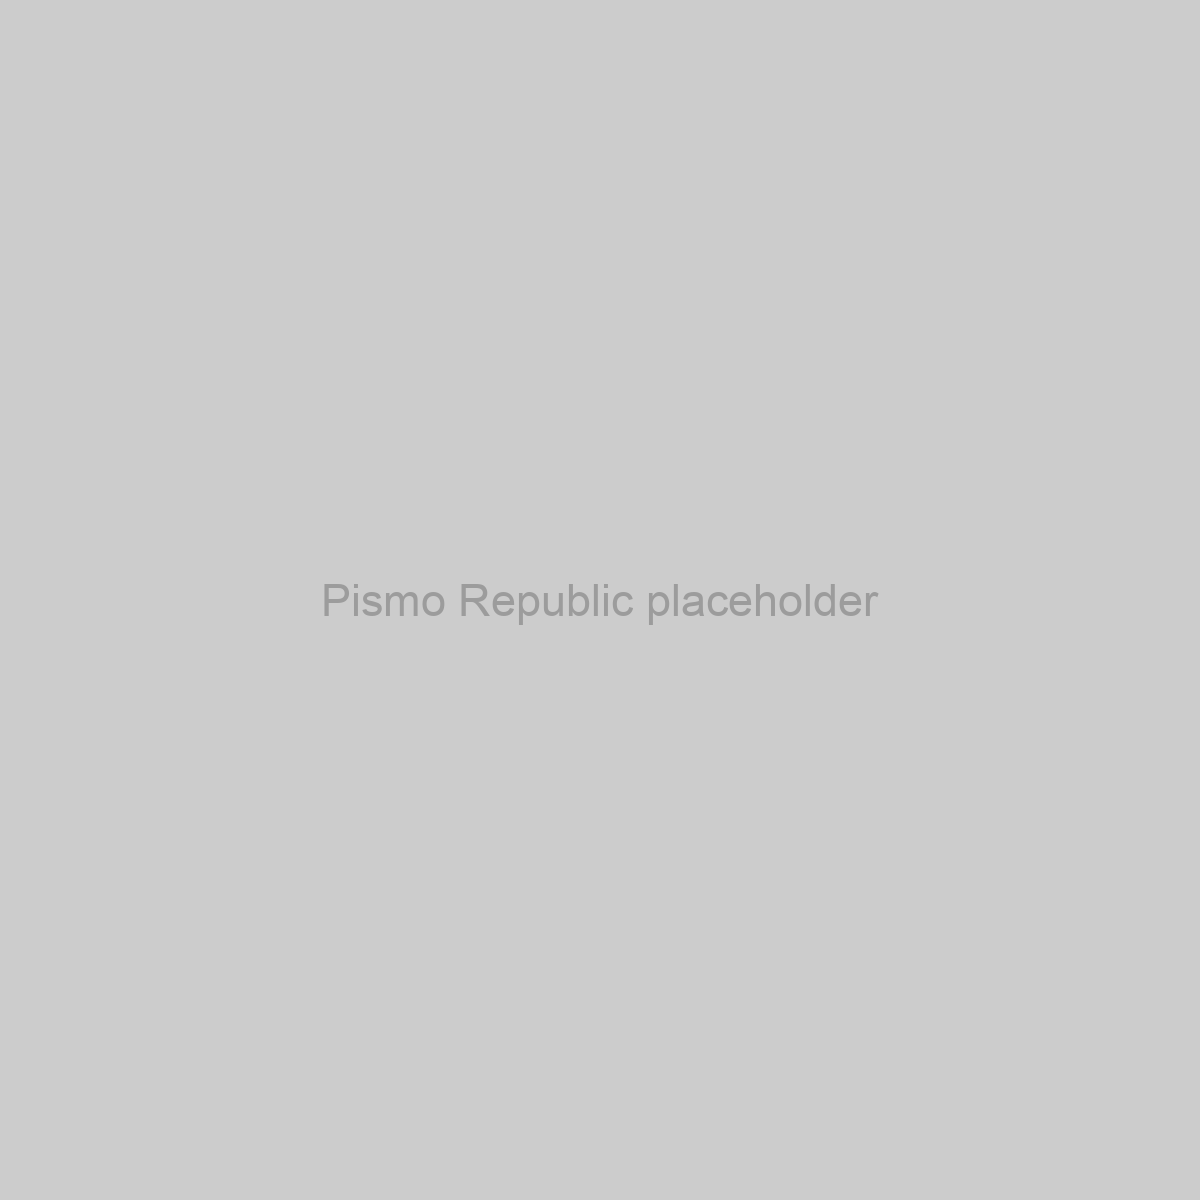 Pismo Republic Placeholder Image